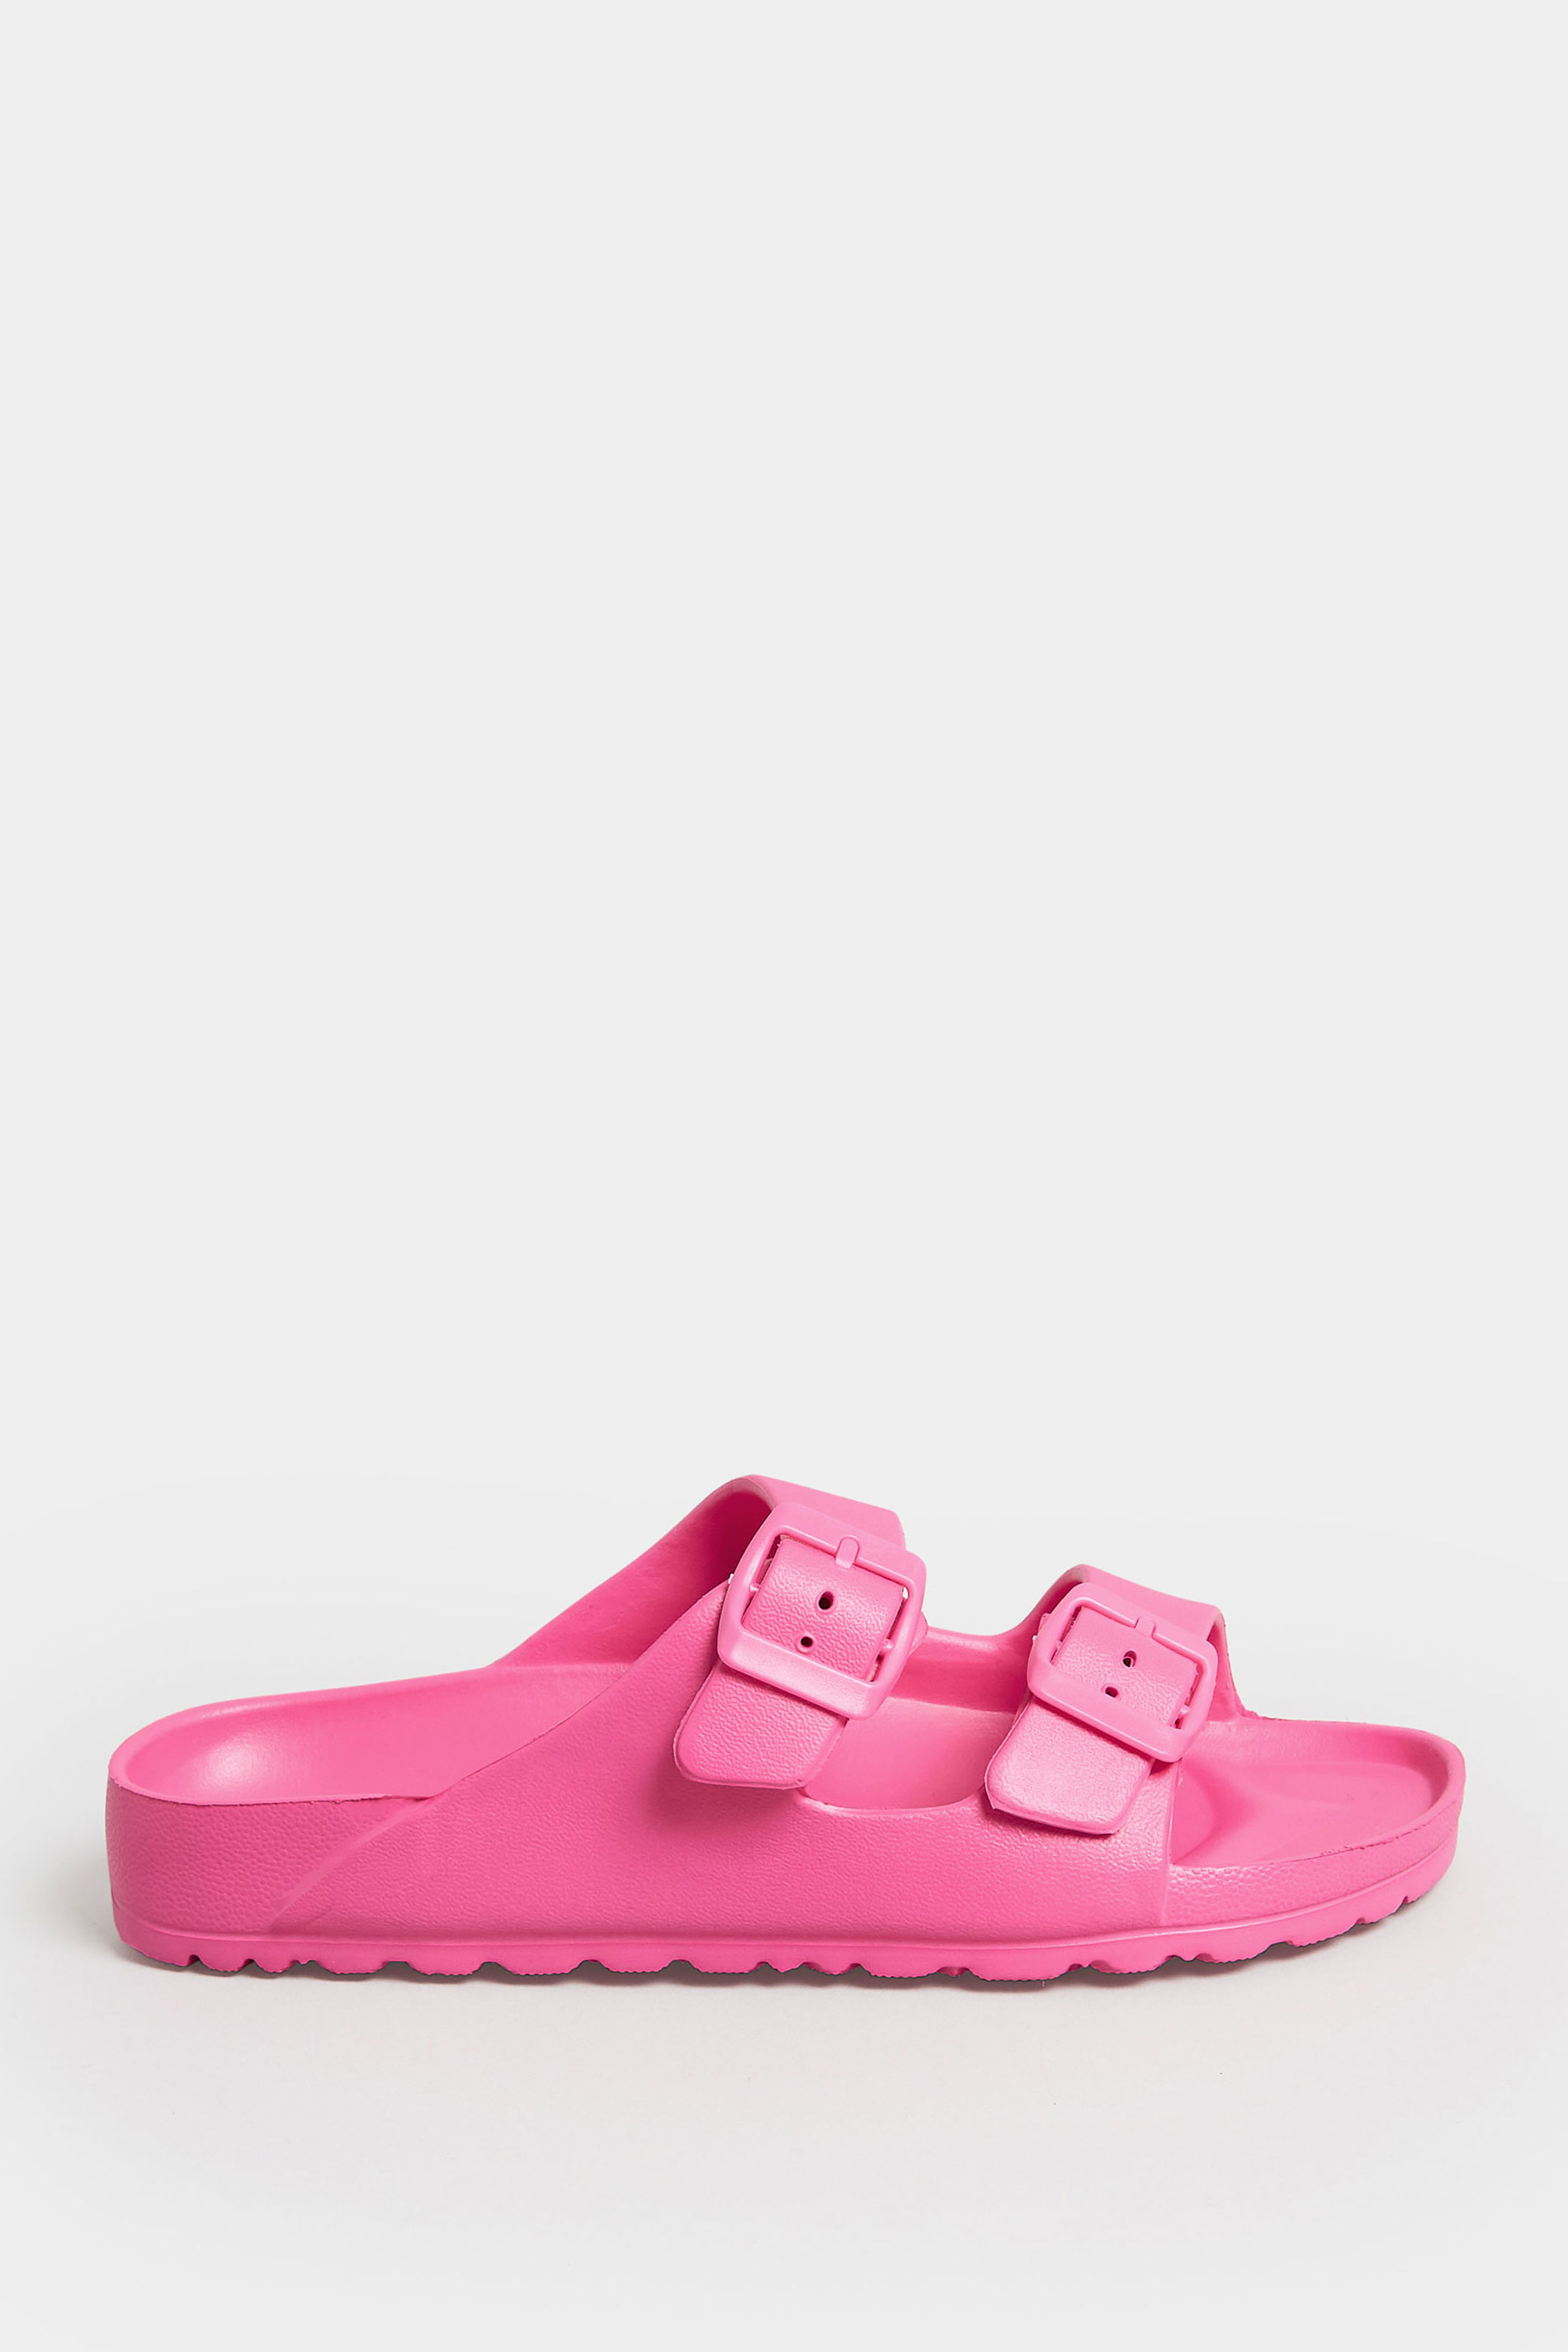 PixieGirl Pink Two Strap Sliders In Standard Fit | PixieGirl 3